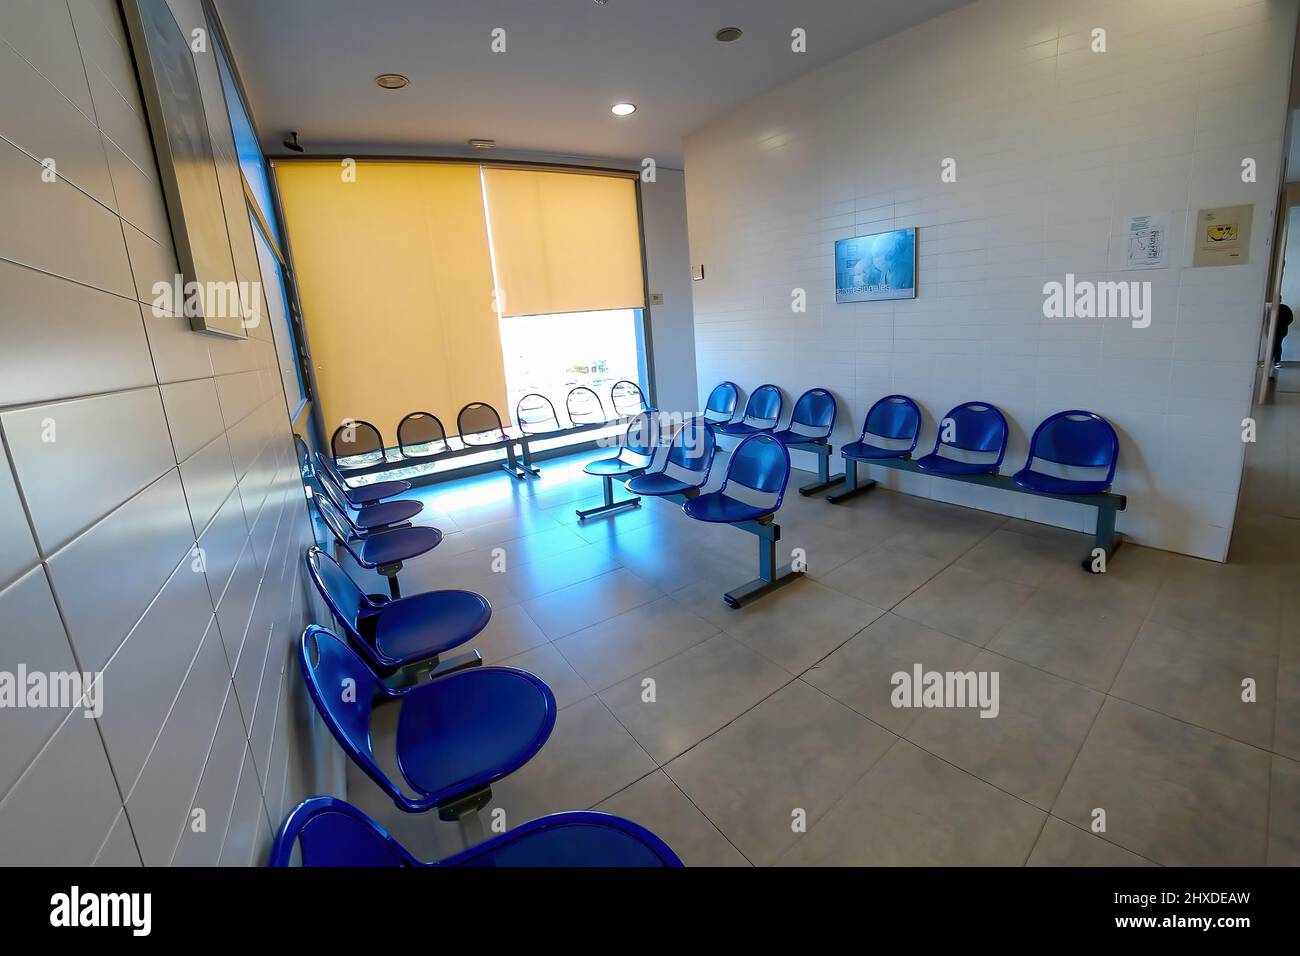 Huelva, Espagne - 9 mars 2022 : salle d'attente vide à l'intérieur d'un centre de santé presque vide en raison du coronavirus Covid-19 Banque D'Images